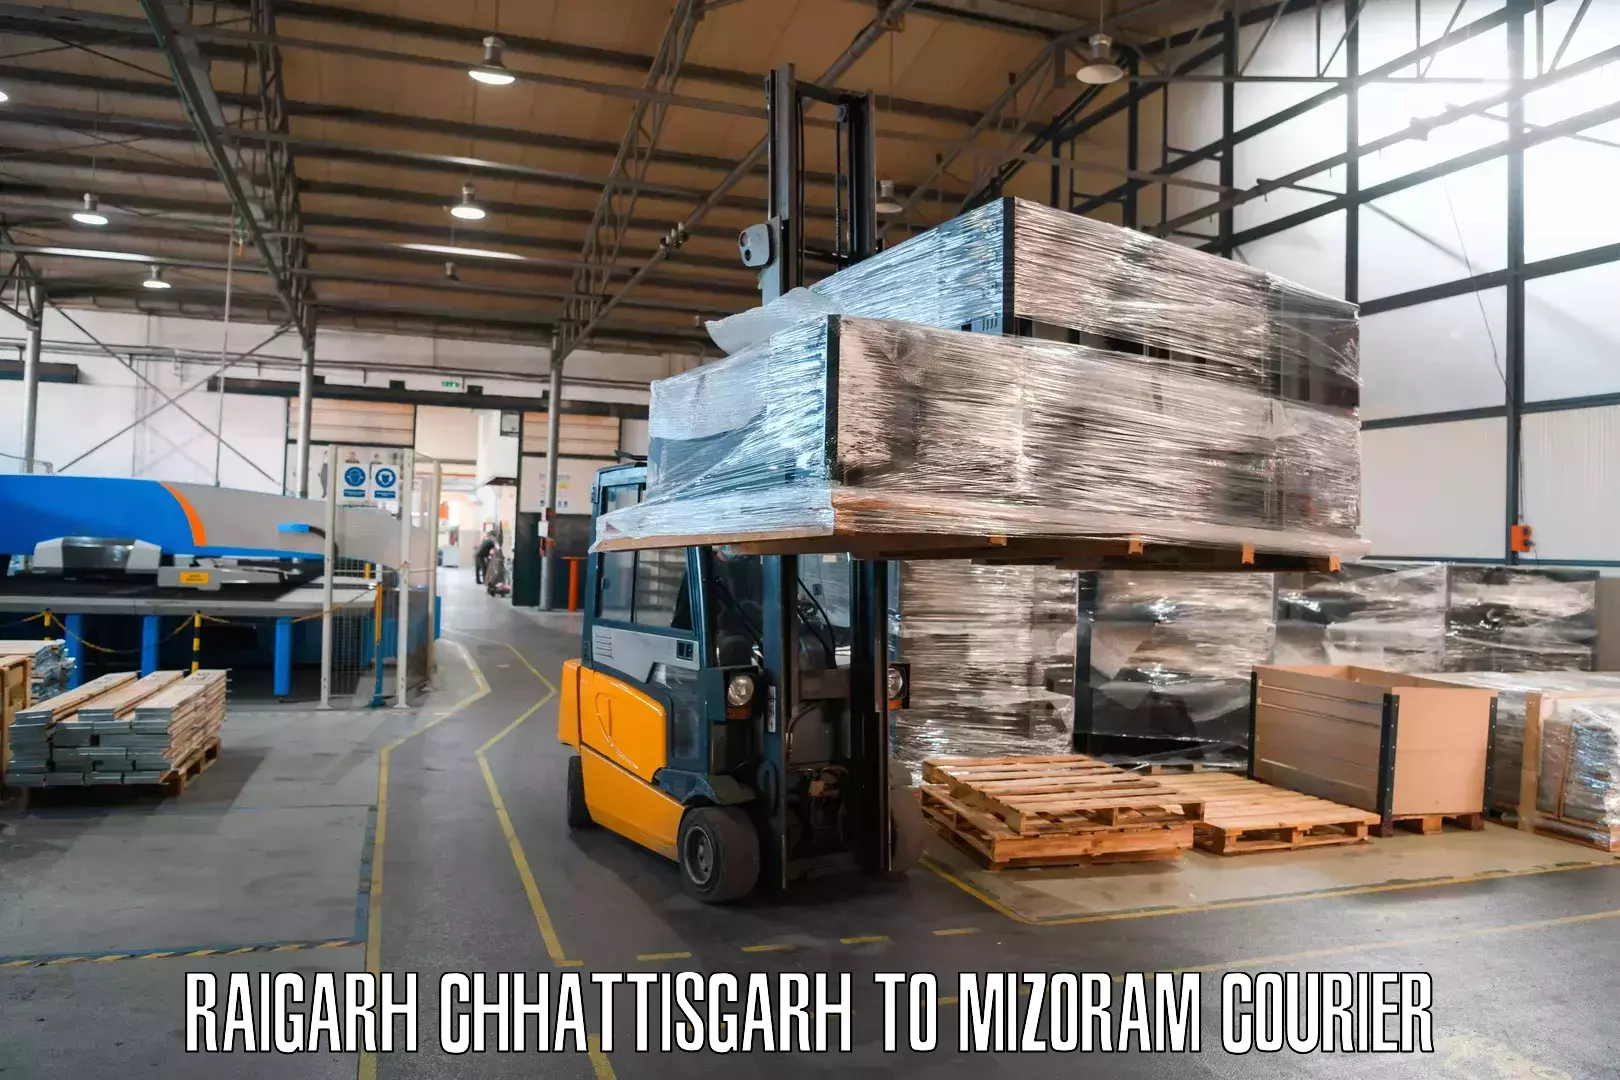 Efficient freight service Raigarh Chhattisgarh to Darlawn